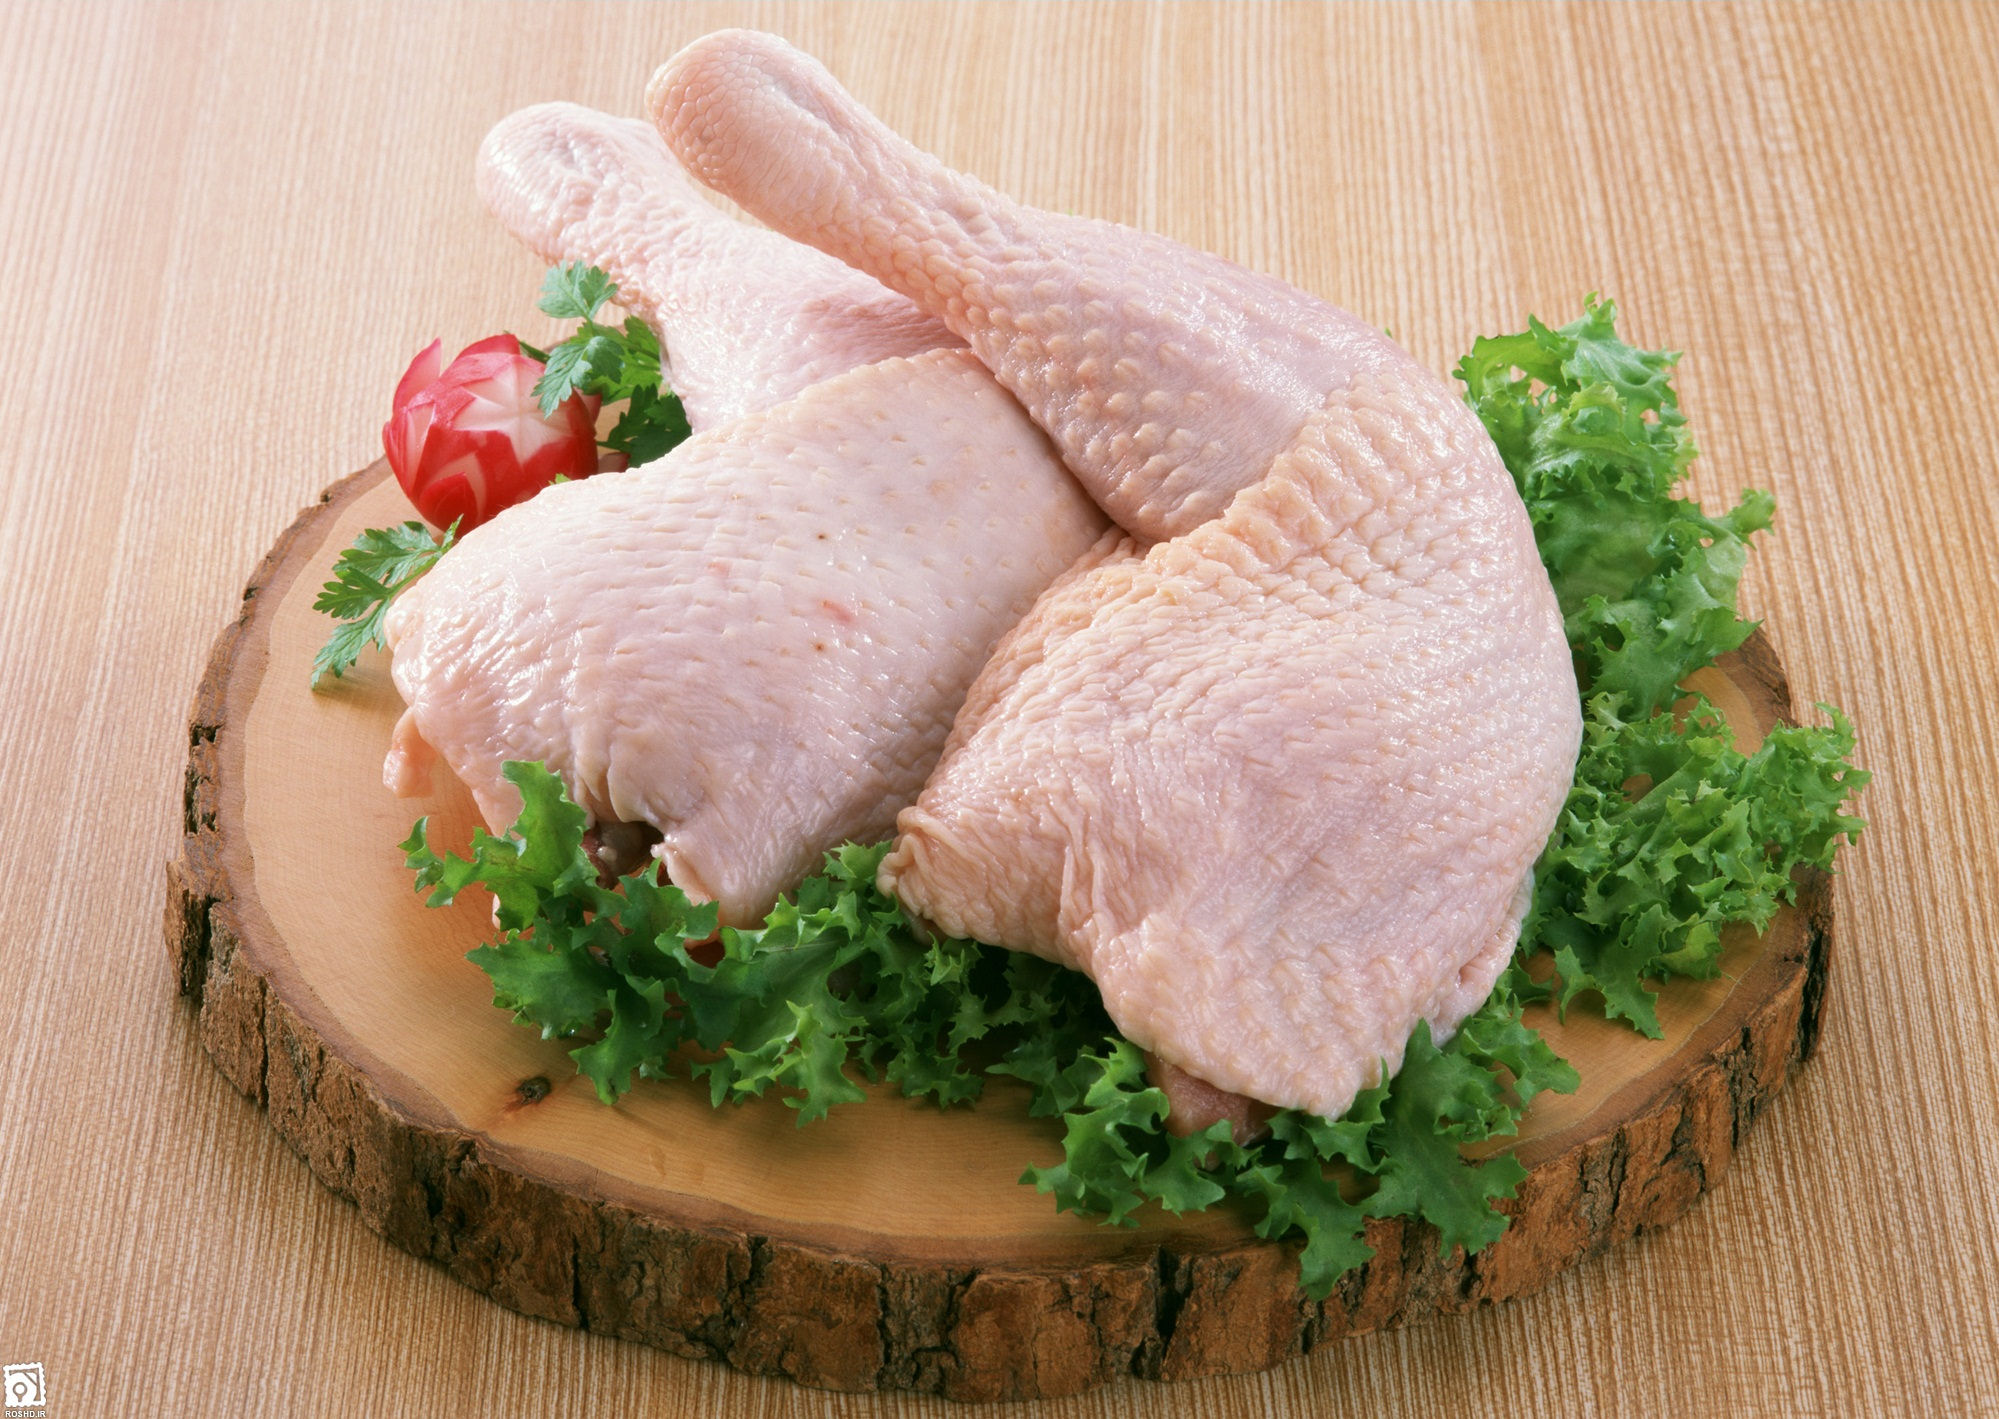 فوت آشپزی/ تکنیک های فوق العاده برای خرید «مرغ سالم»